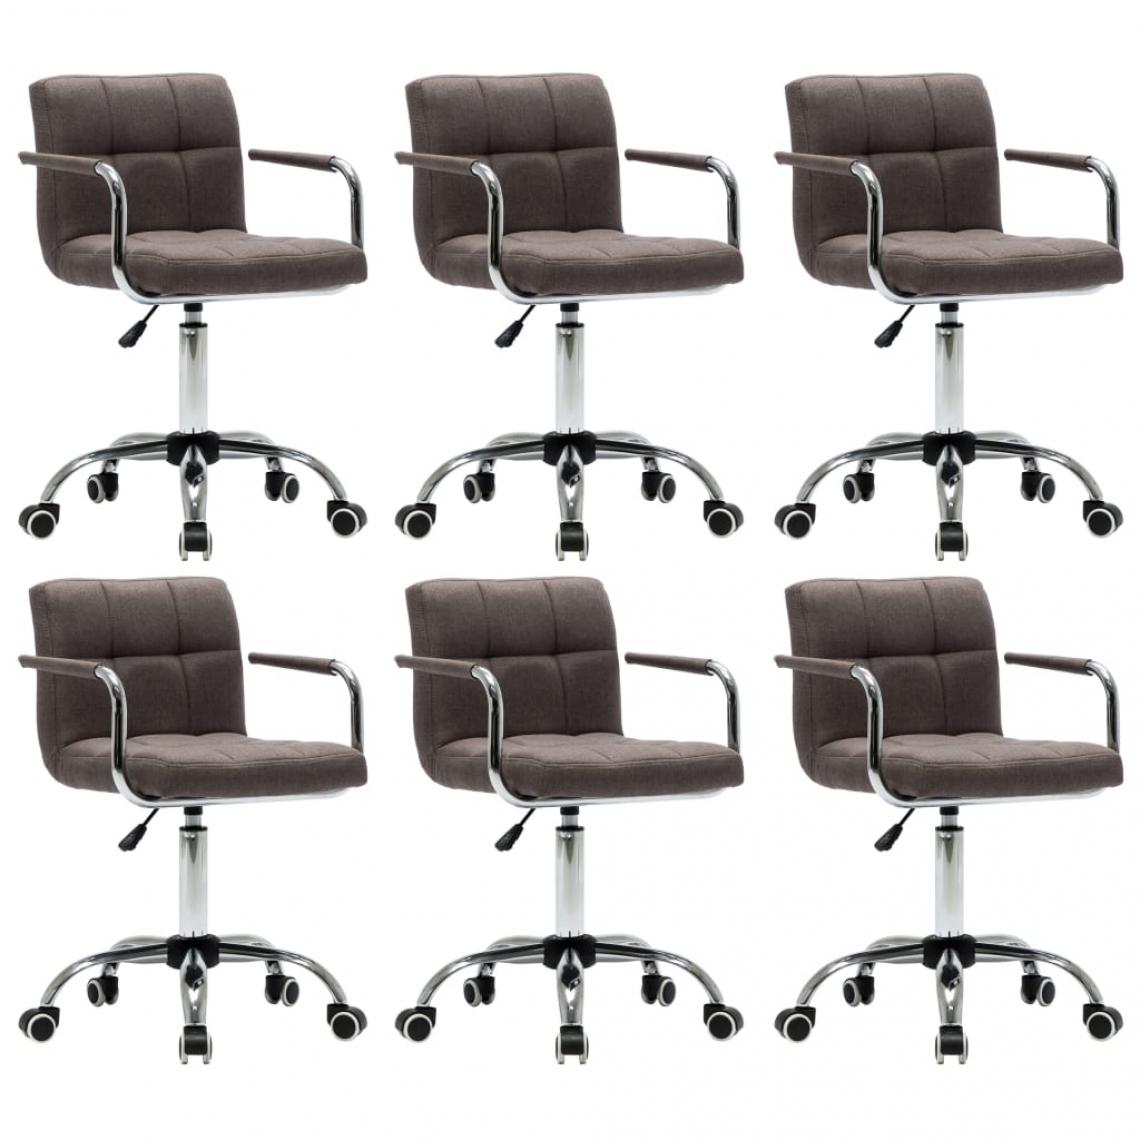 Decoshop26 - Lot de 6 chaises de salle à manger cuisine design contemporain tissu taupe CDS022850 - Chaises